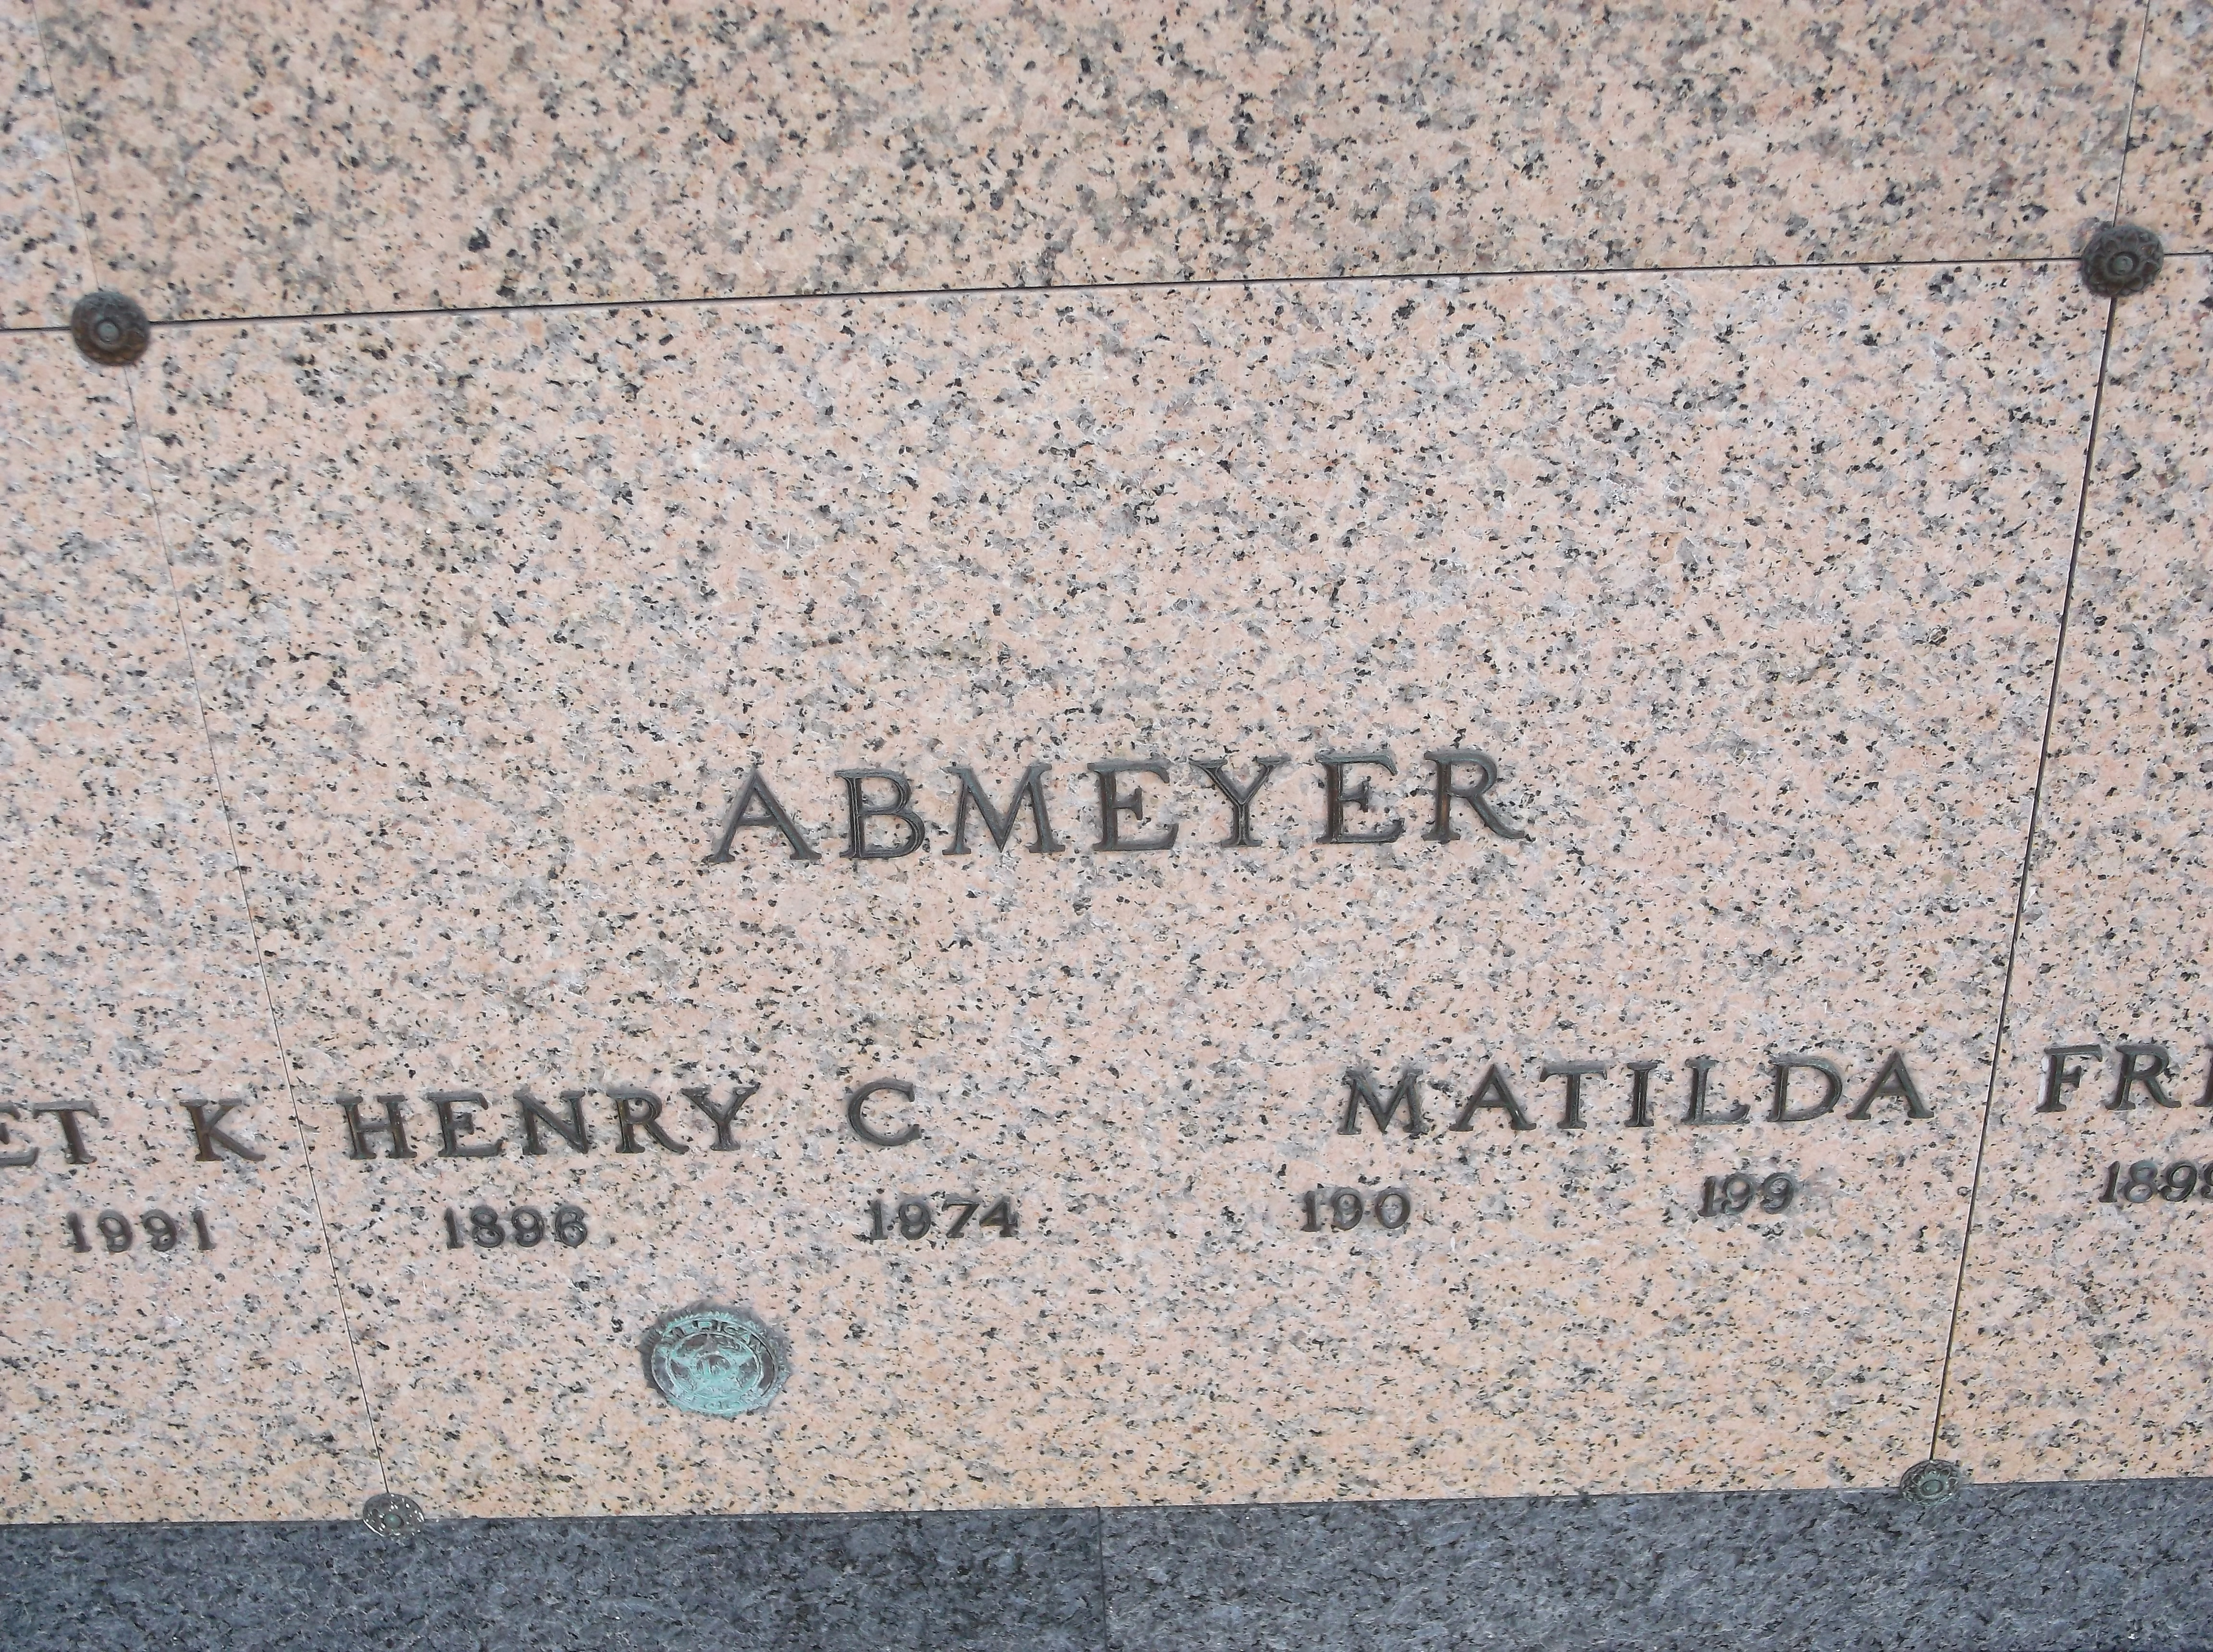 Henry C Abmeyer